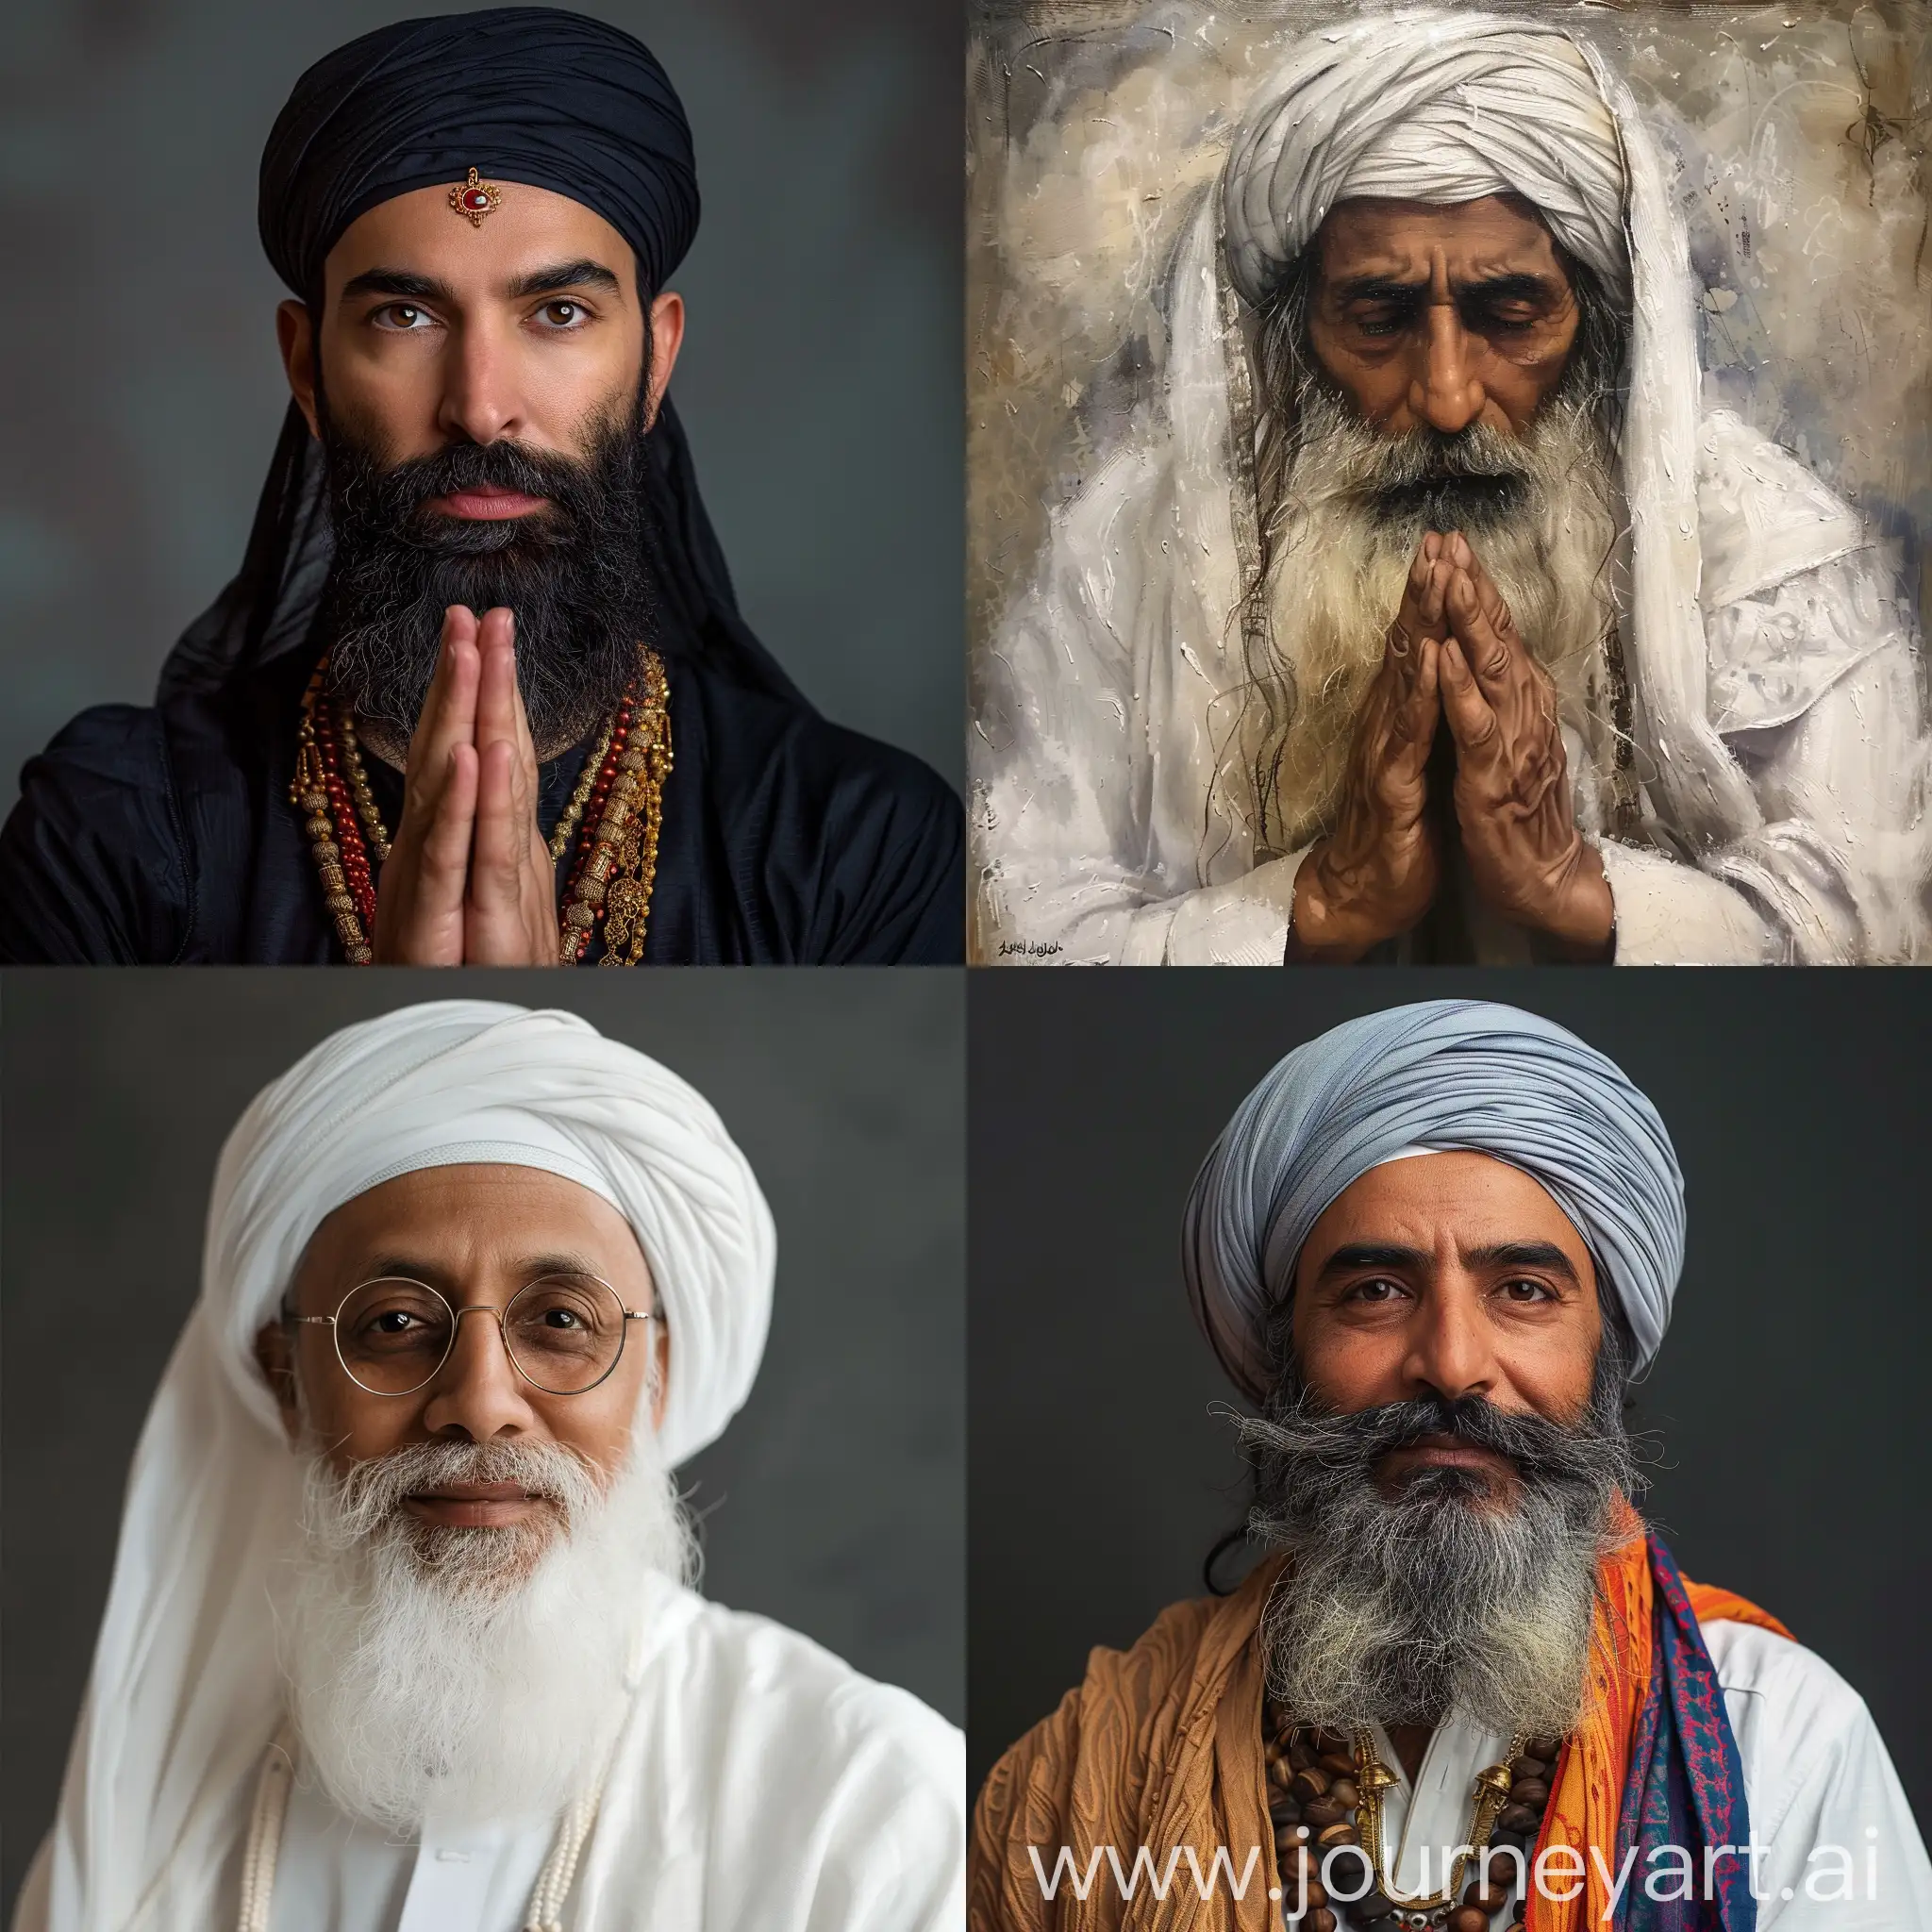 Spiritual-Sheikh-Praying-in-Traditional-Garb